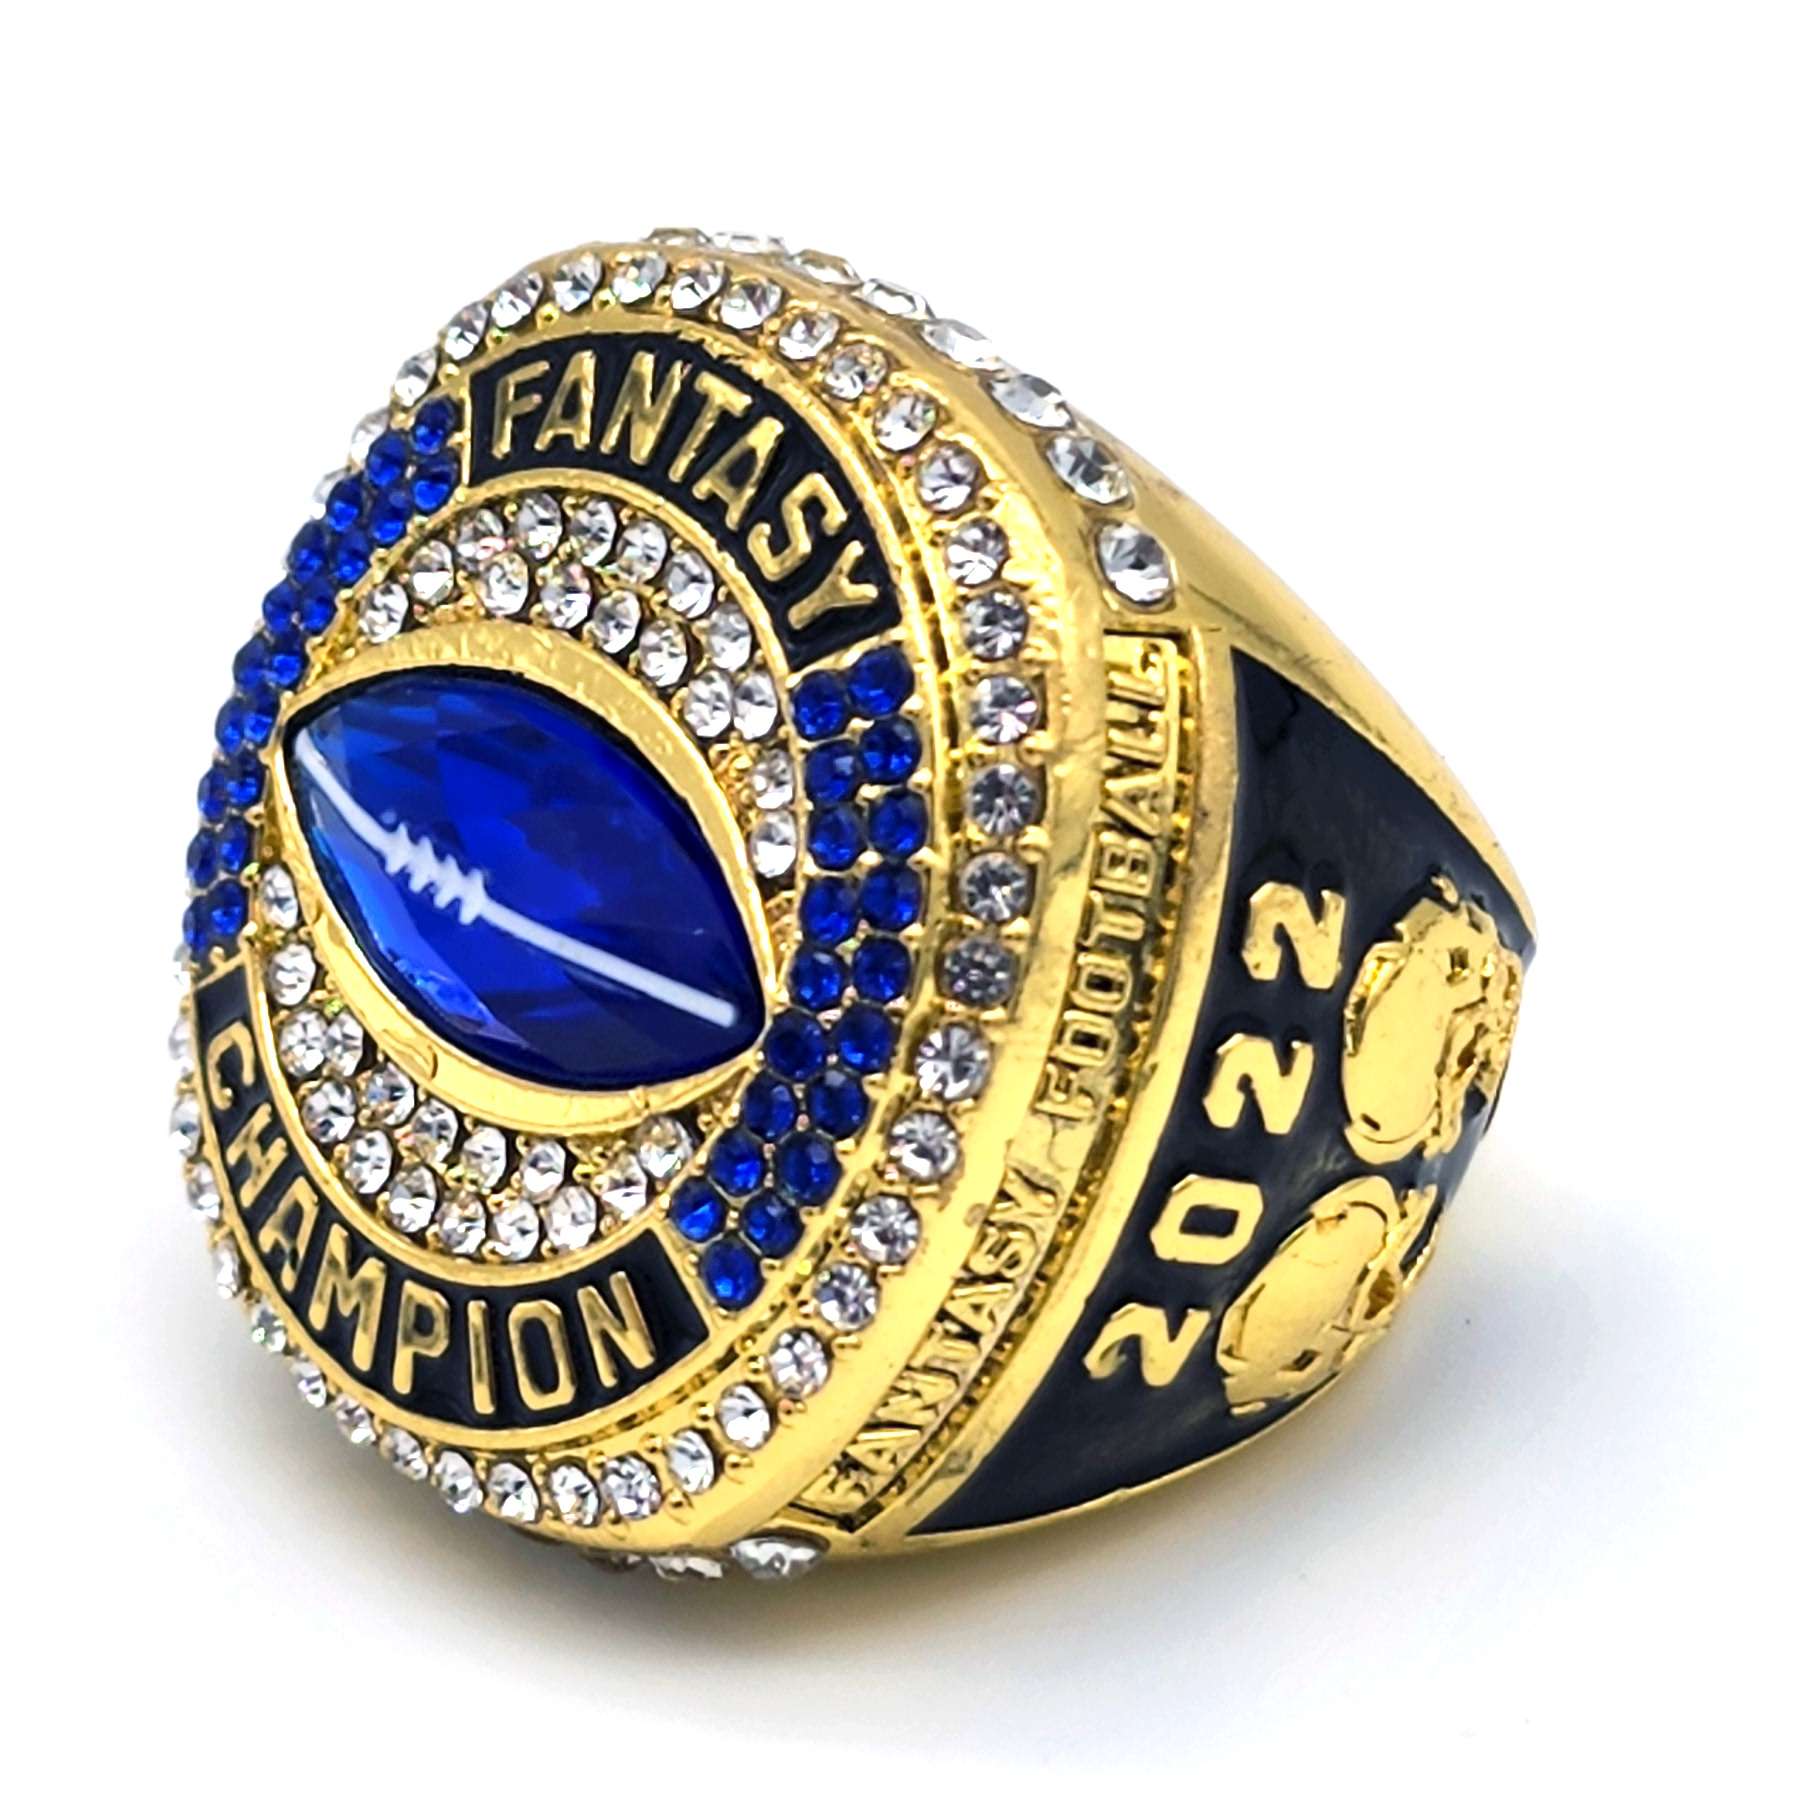 2022 FFL Champion Ring GOLD Finish Gold Fantasy Football 2022 Championship Ring 2022 FFL Ring G P Decade Awards 51533 24521.1691988418